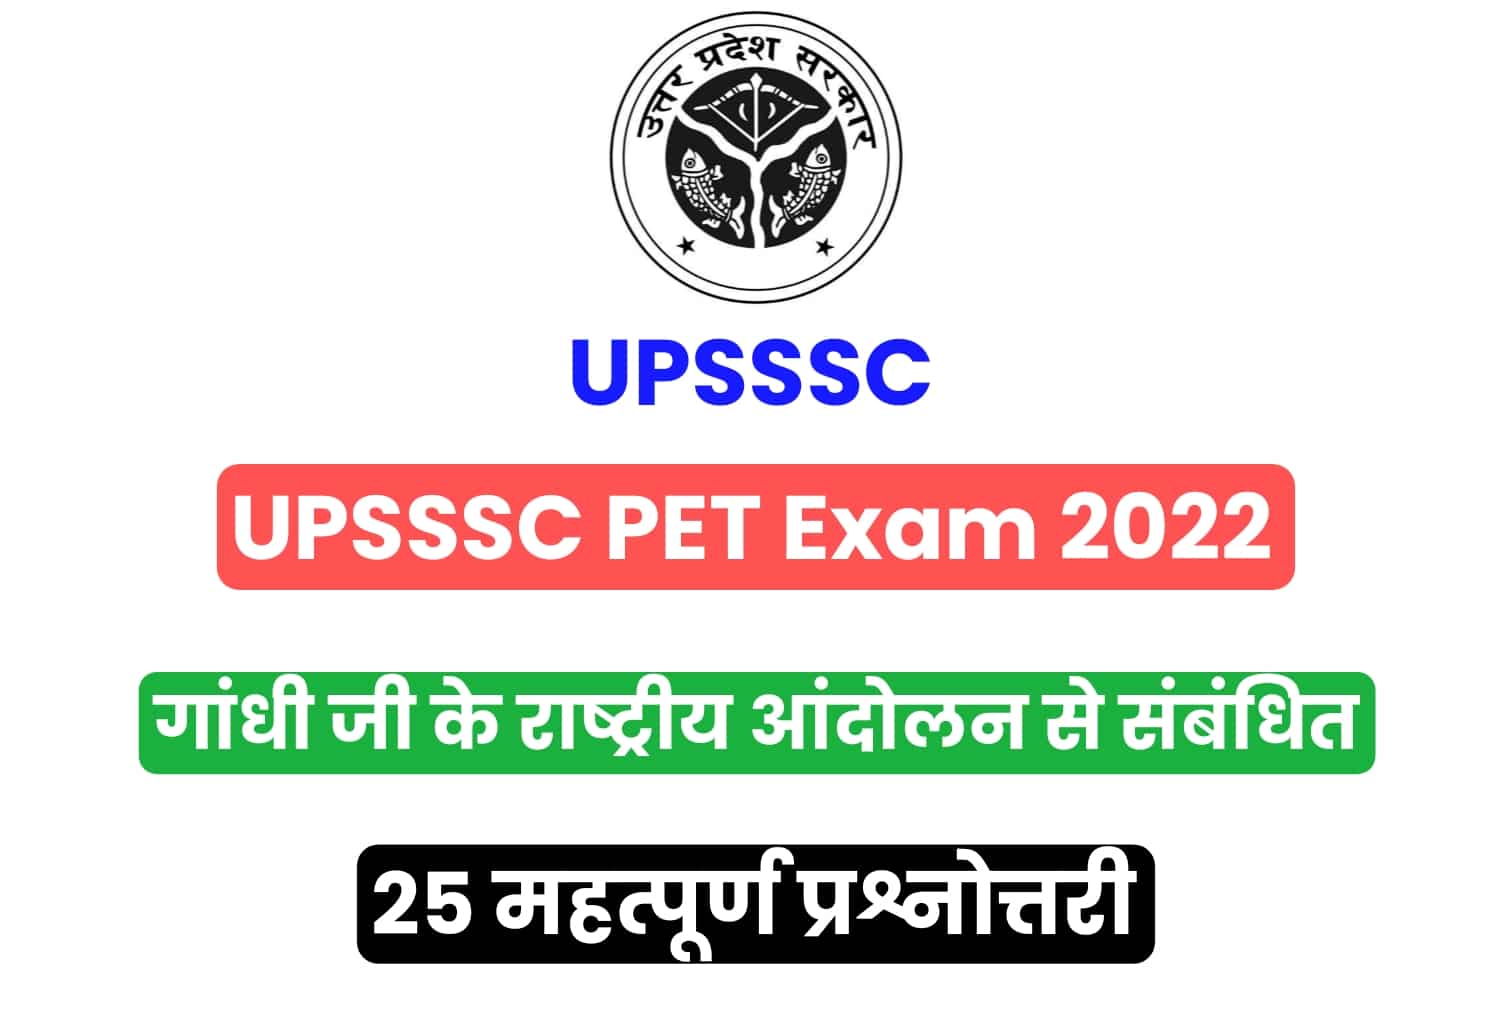 UPSSSC PET Exam 2022 | गांधी जी के राष्ट्रीय आंदोलन से संबंधित 25 महत्वपूर्ण प्रश्नोत्तर, अभी पढ़ें